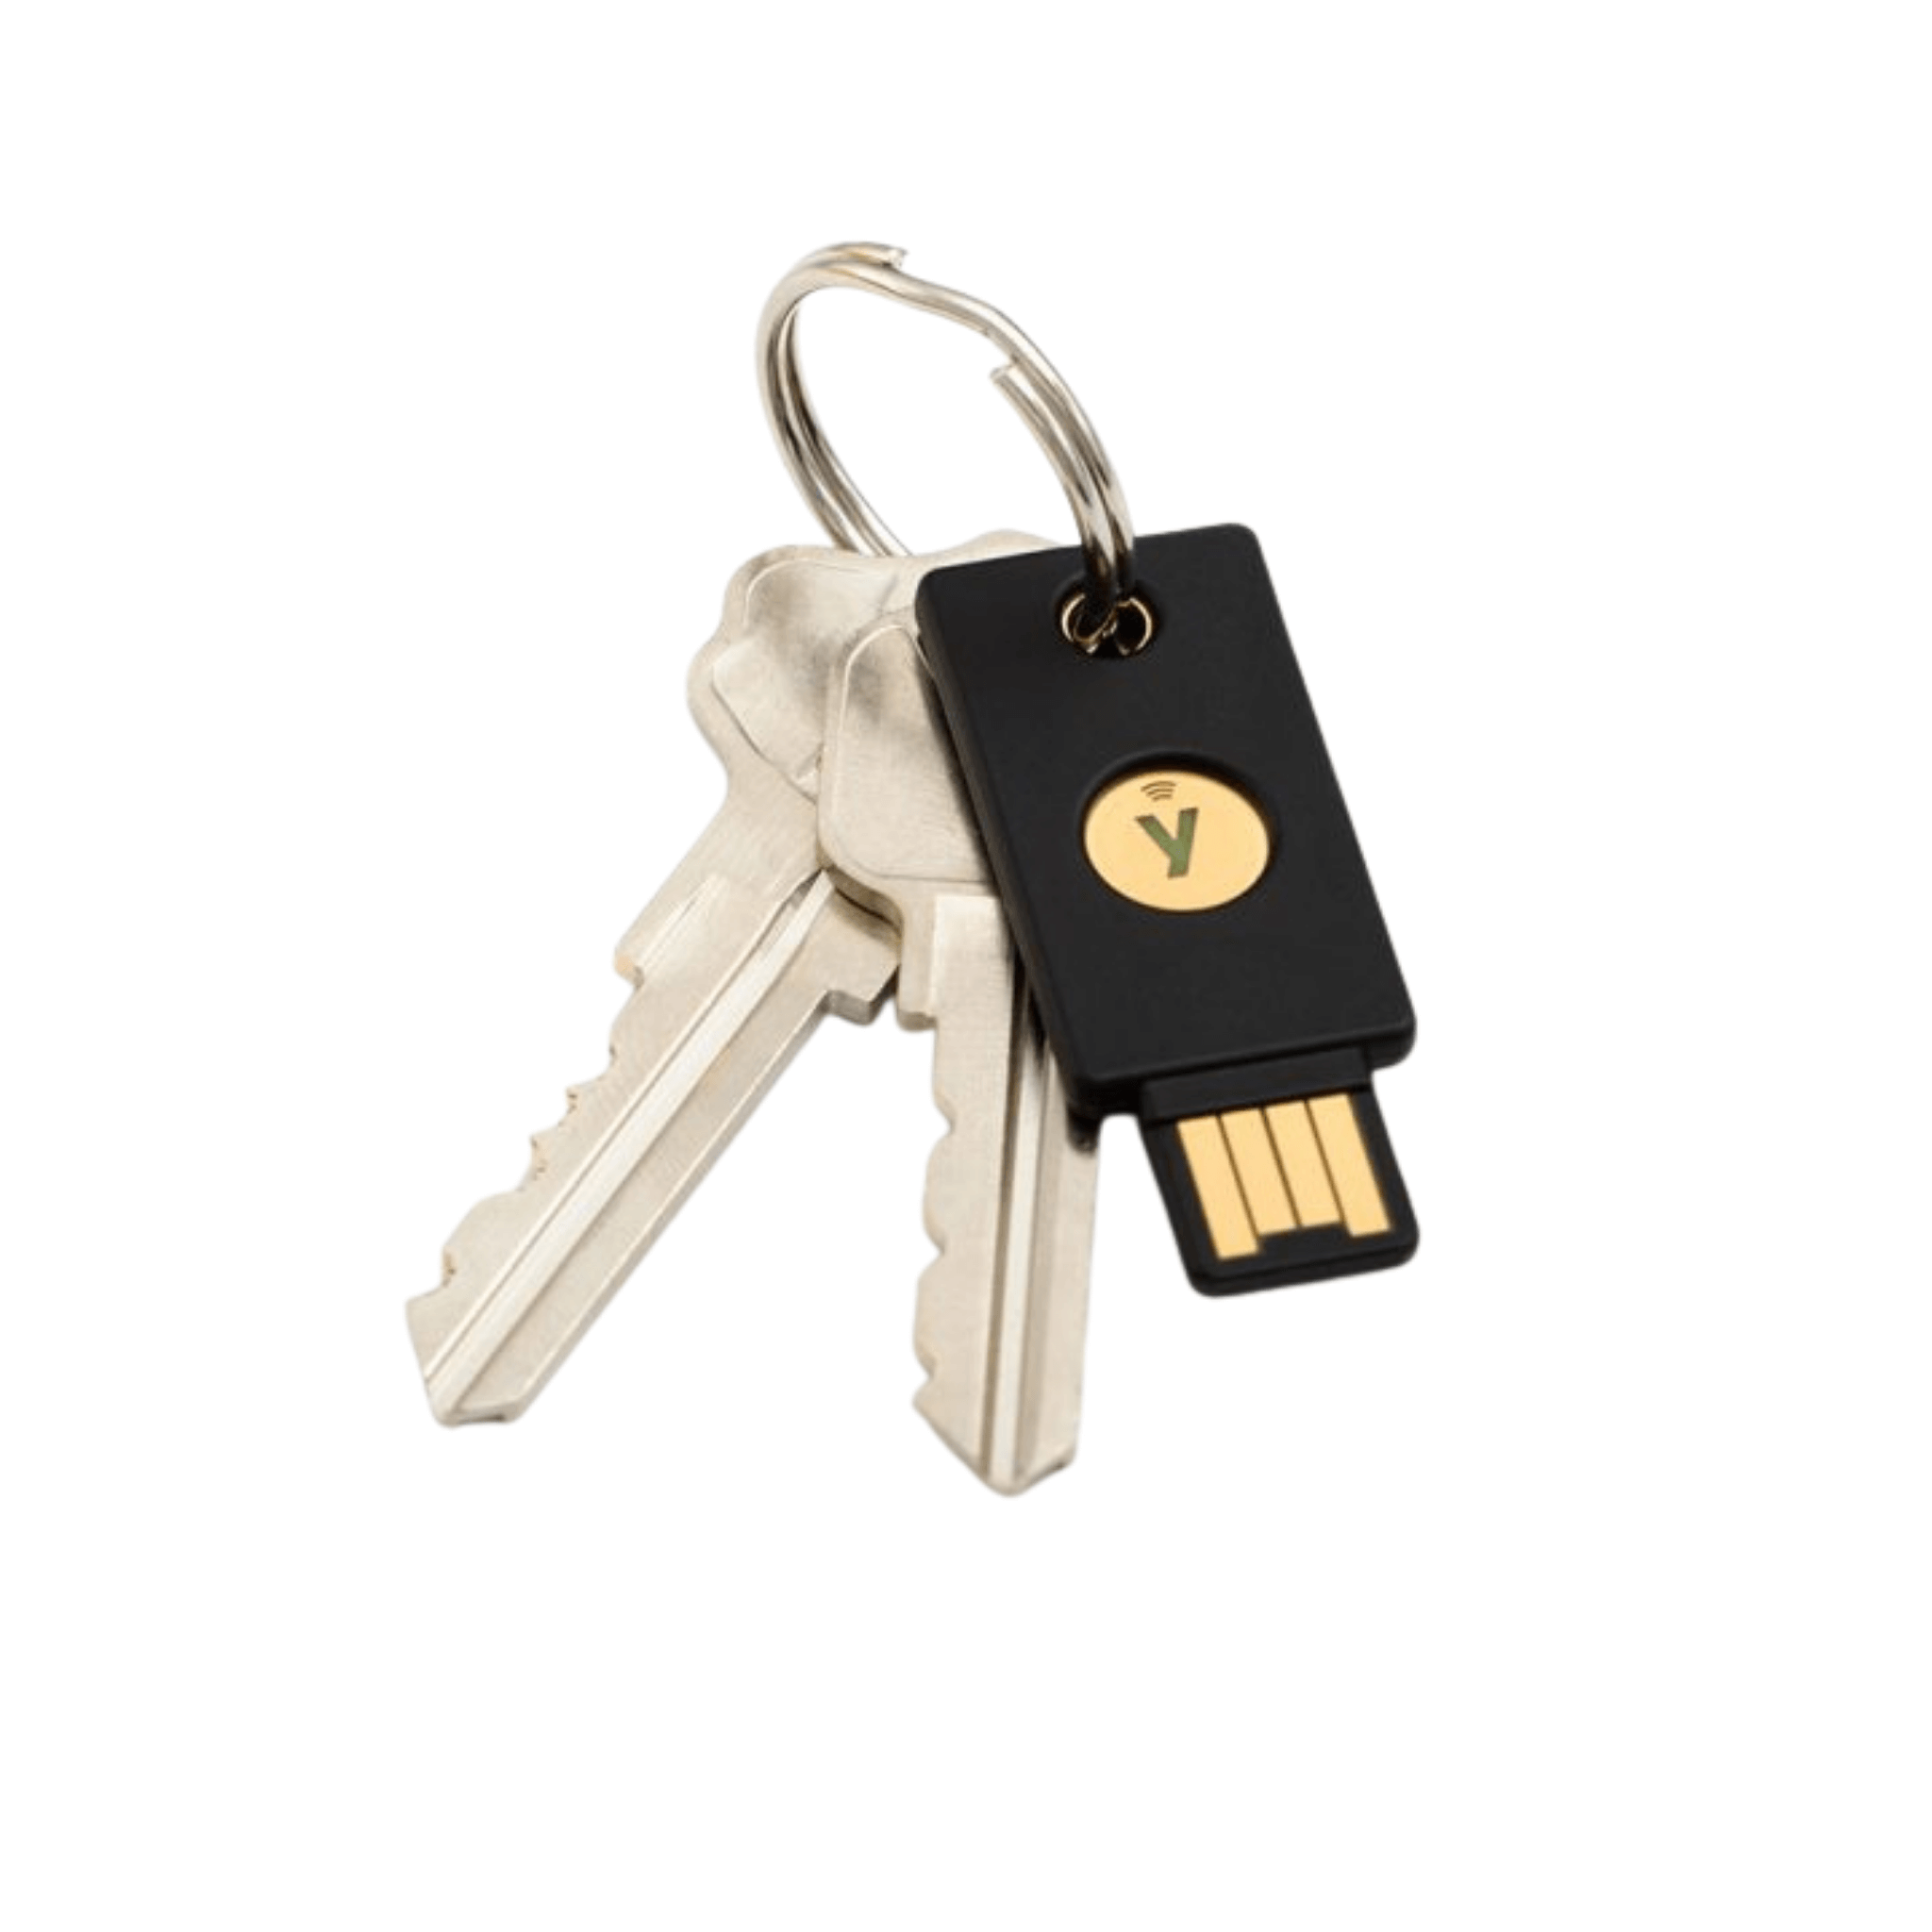 Yubico YubiKey 5 NFC Security Key On A Keychain